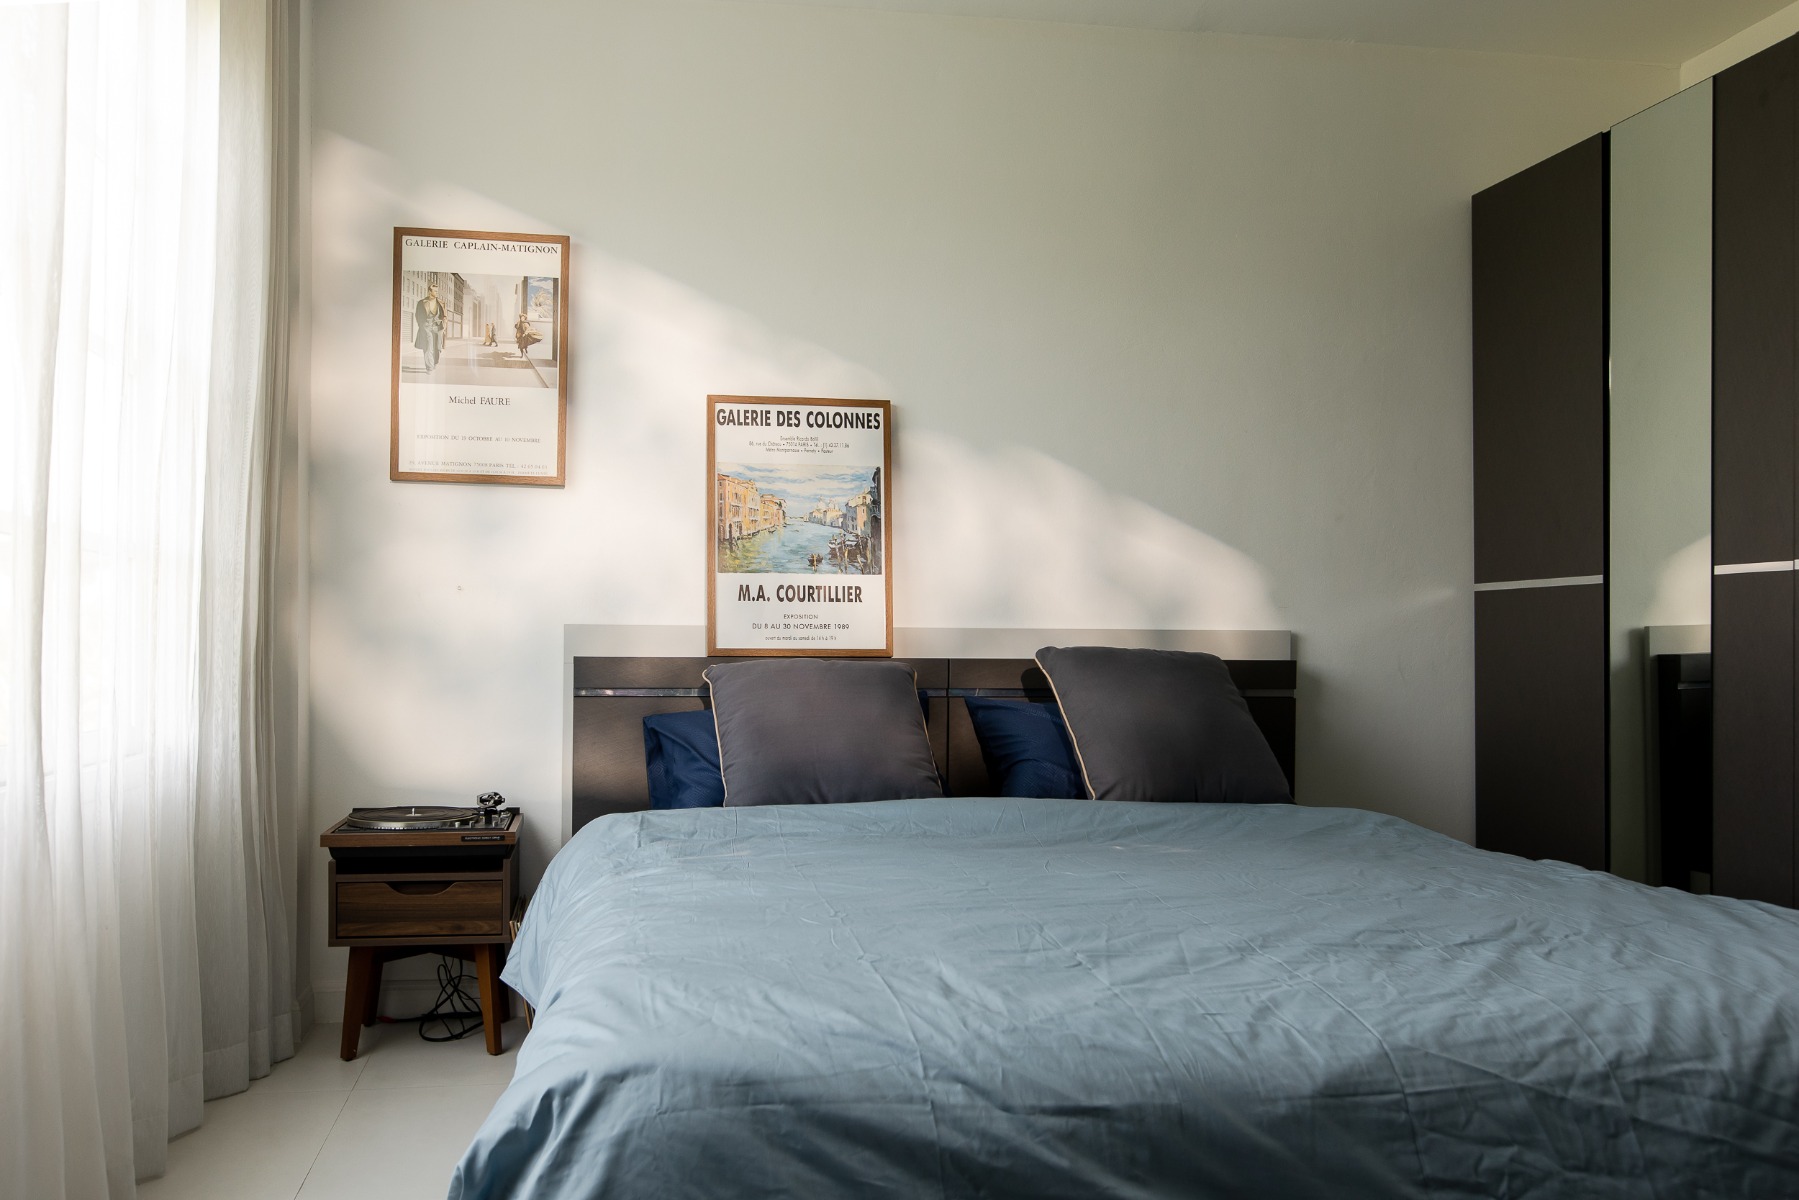 Thiết kế mẫu phòng ngủ với đồ dùng nội thất đơn giản hiện đại